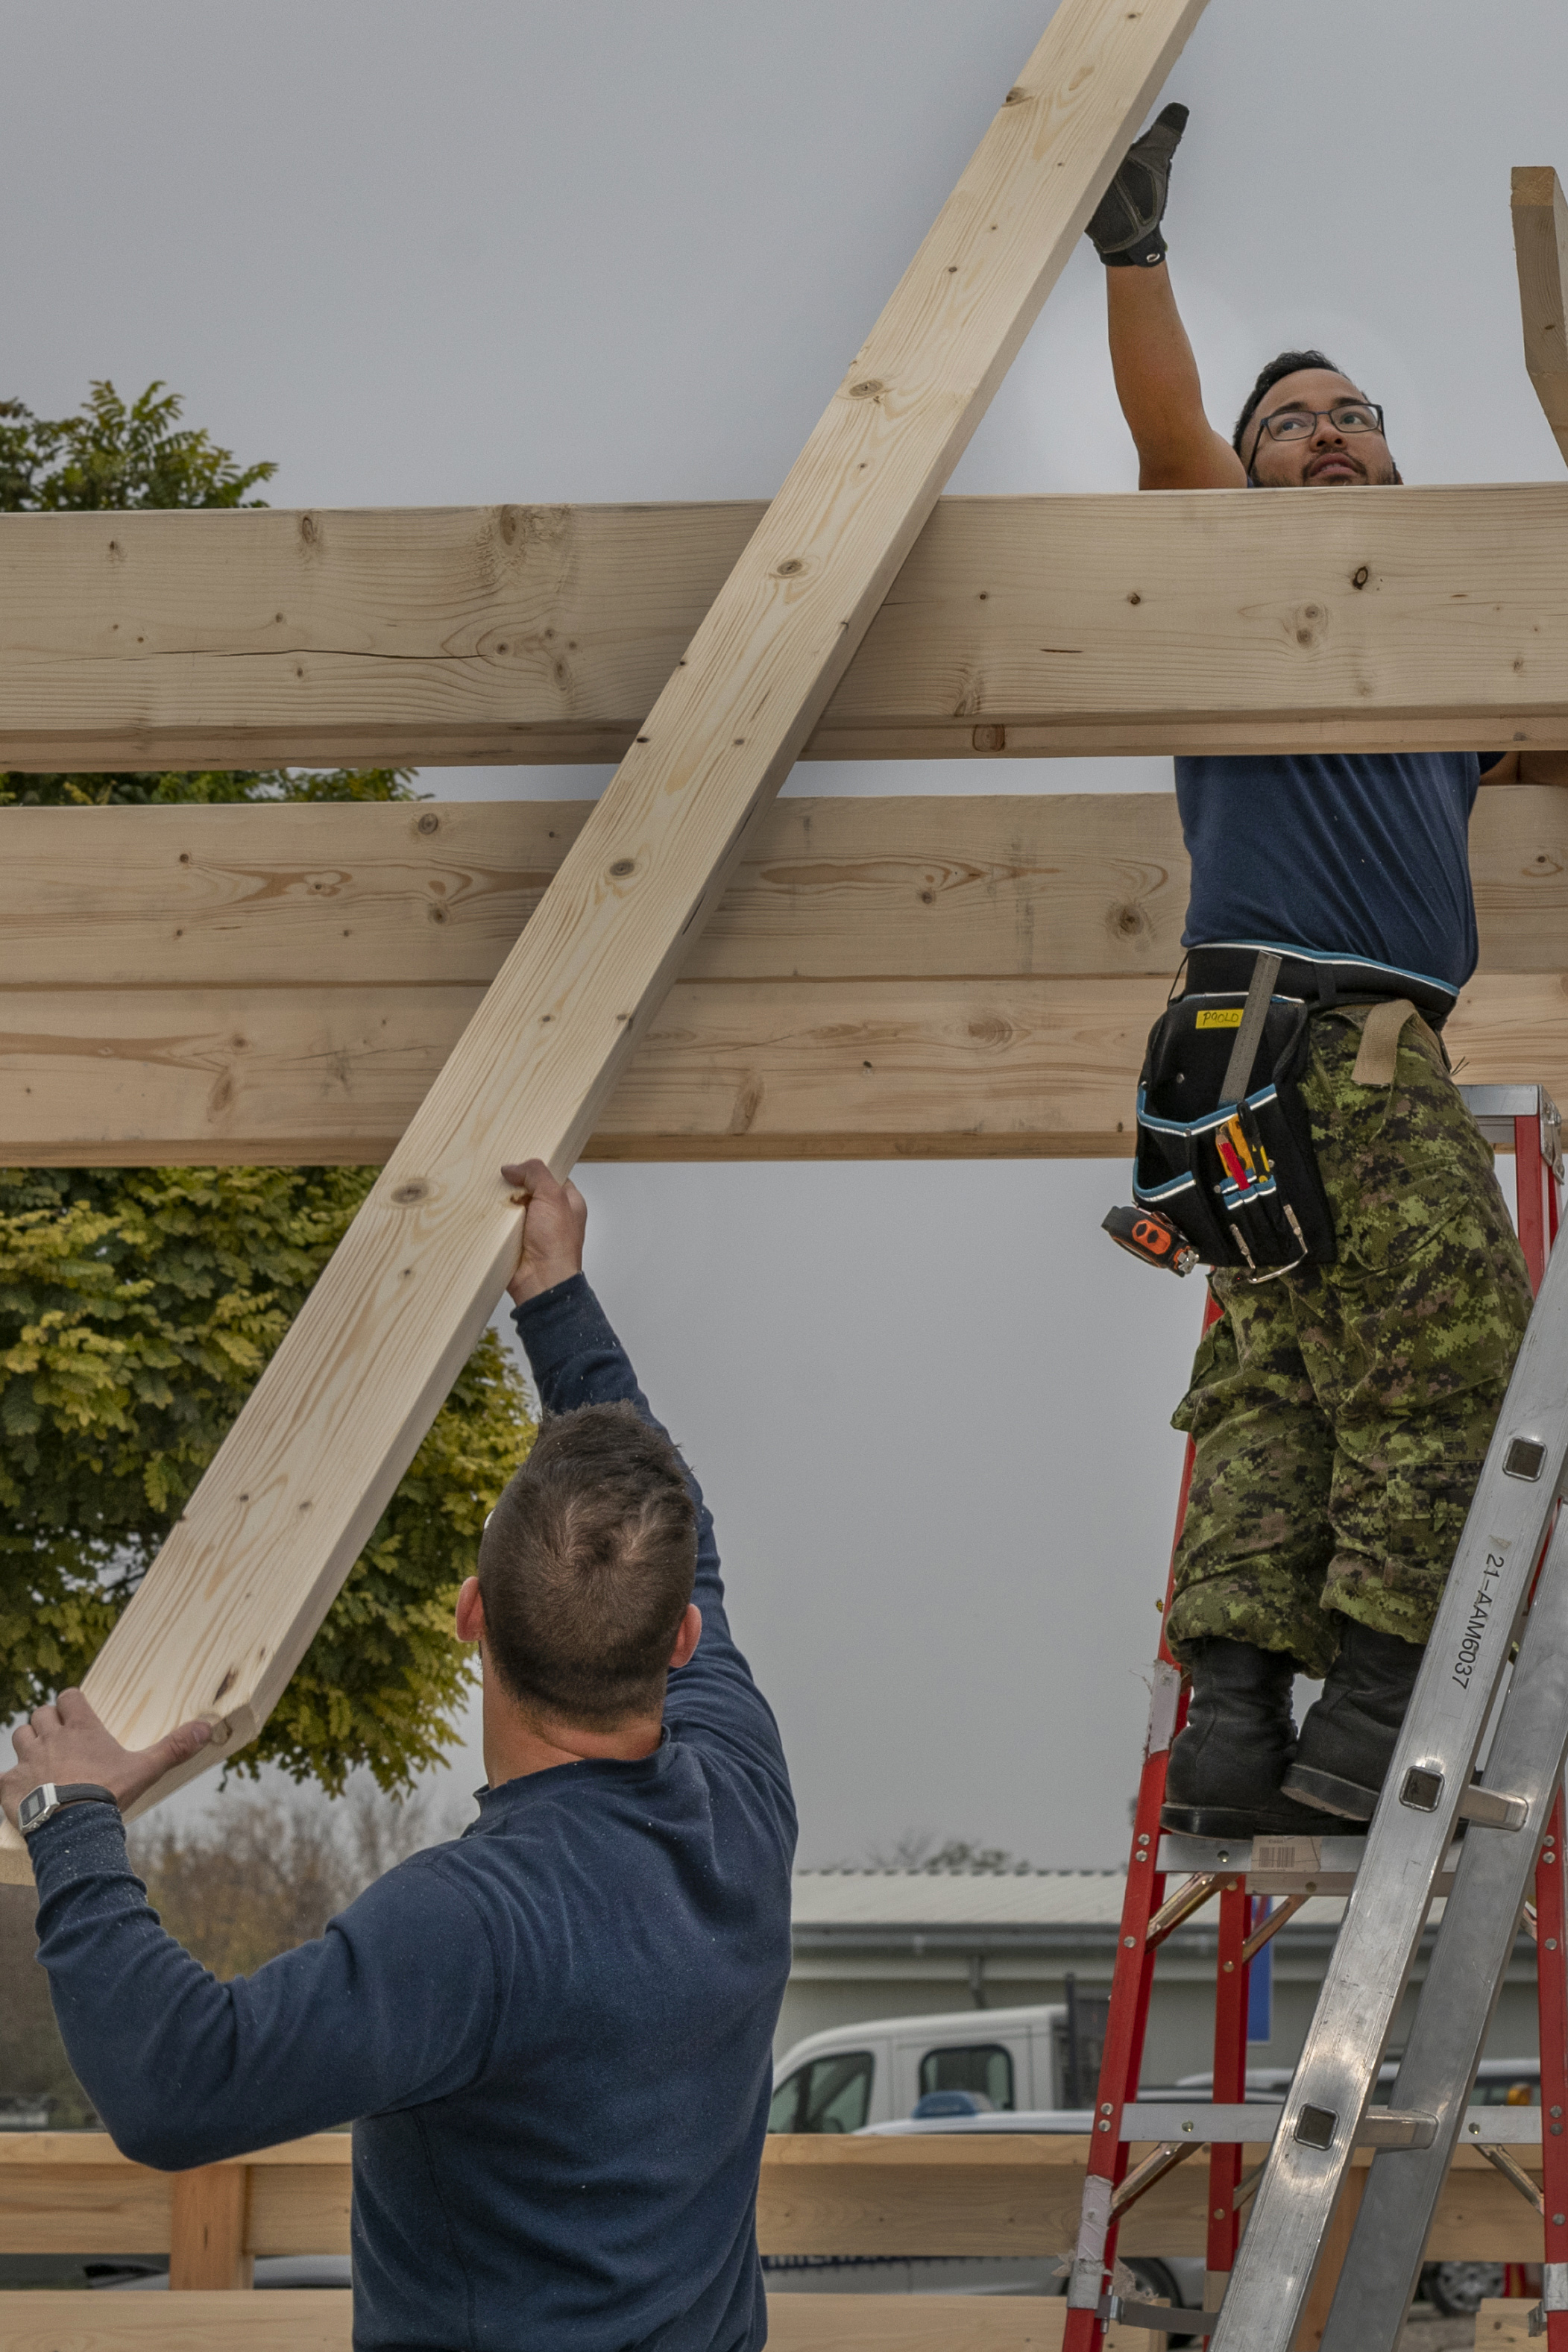 Construire des bâtiments et d’autres structures représente une grande partie du travail de technicien en construction spécialisé en charpenterie. Photo : Photographie des Forces armées canadiennes.